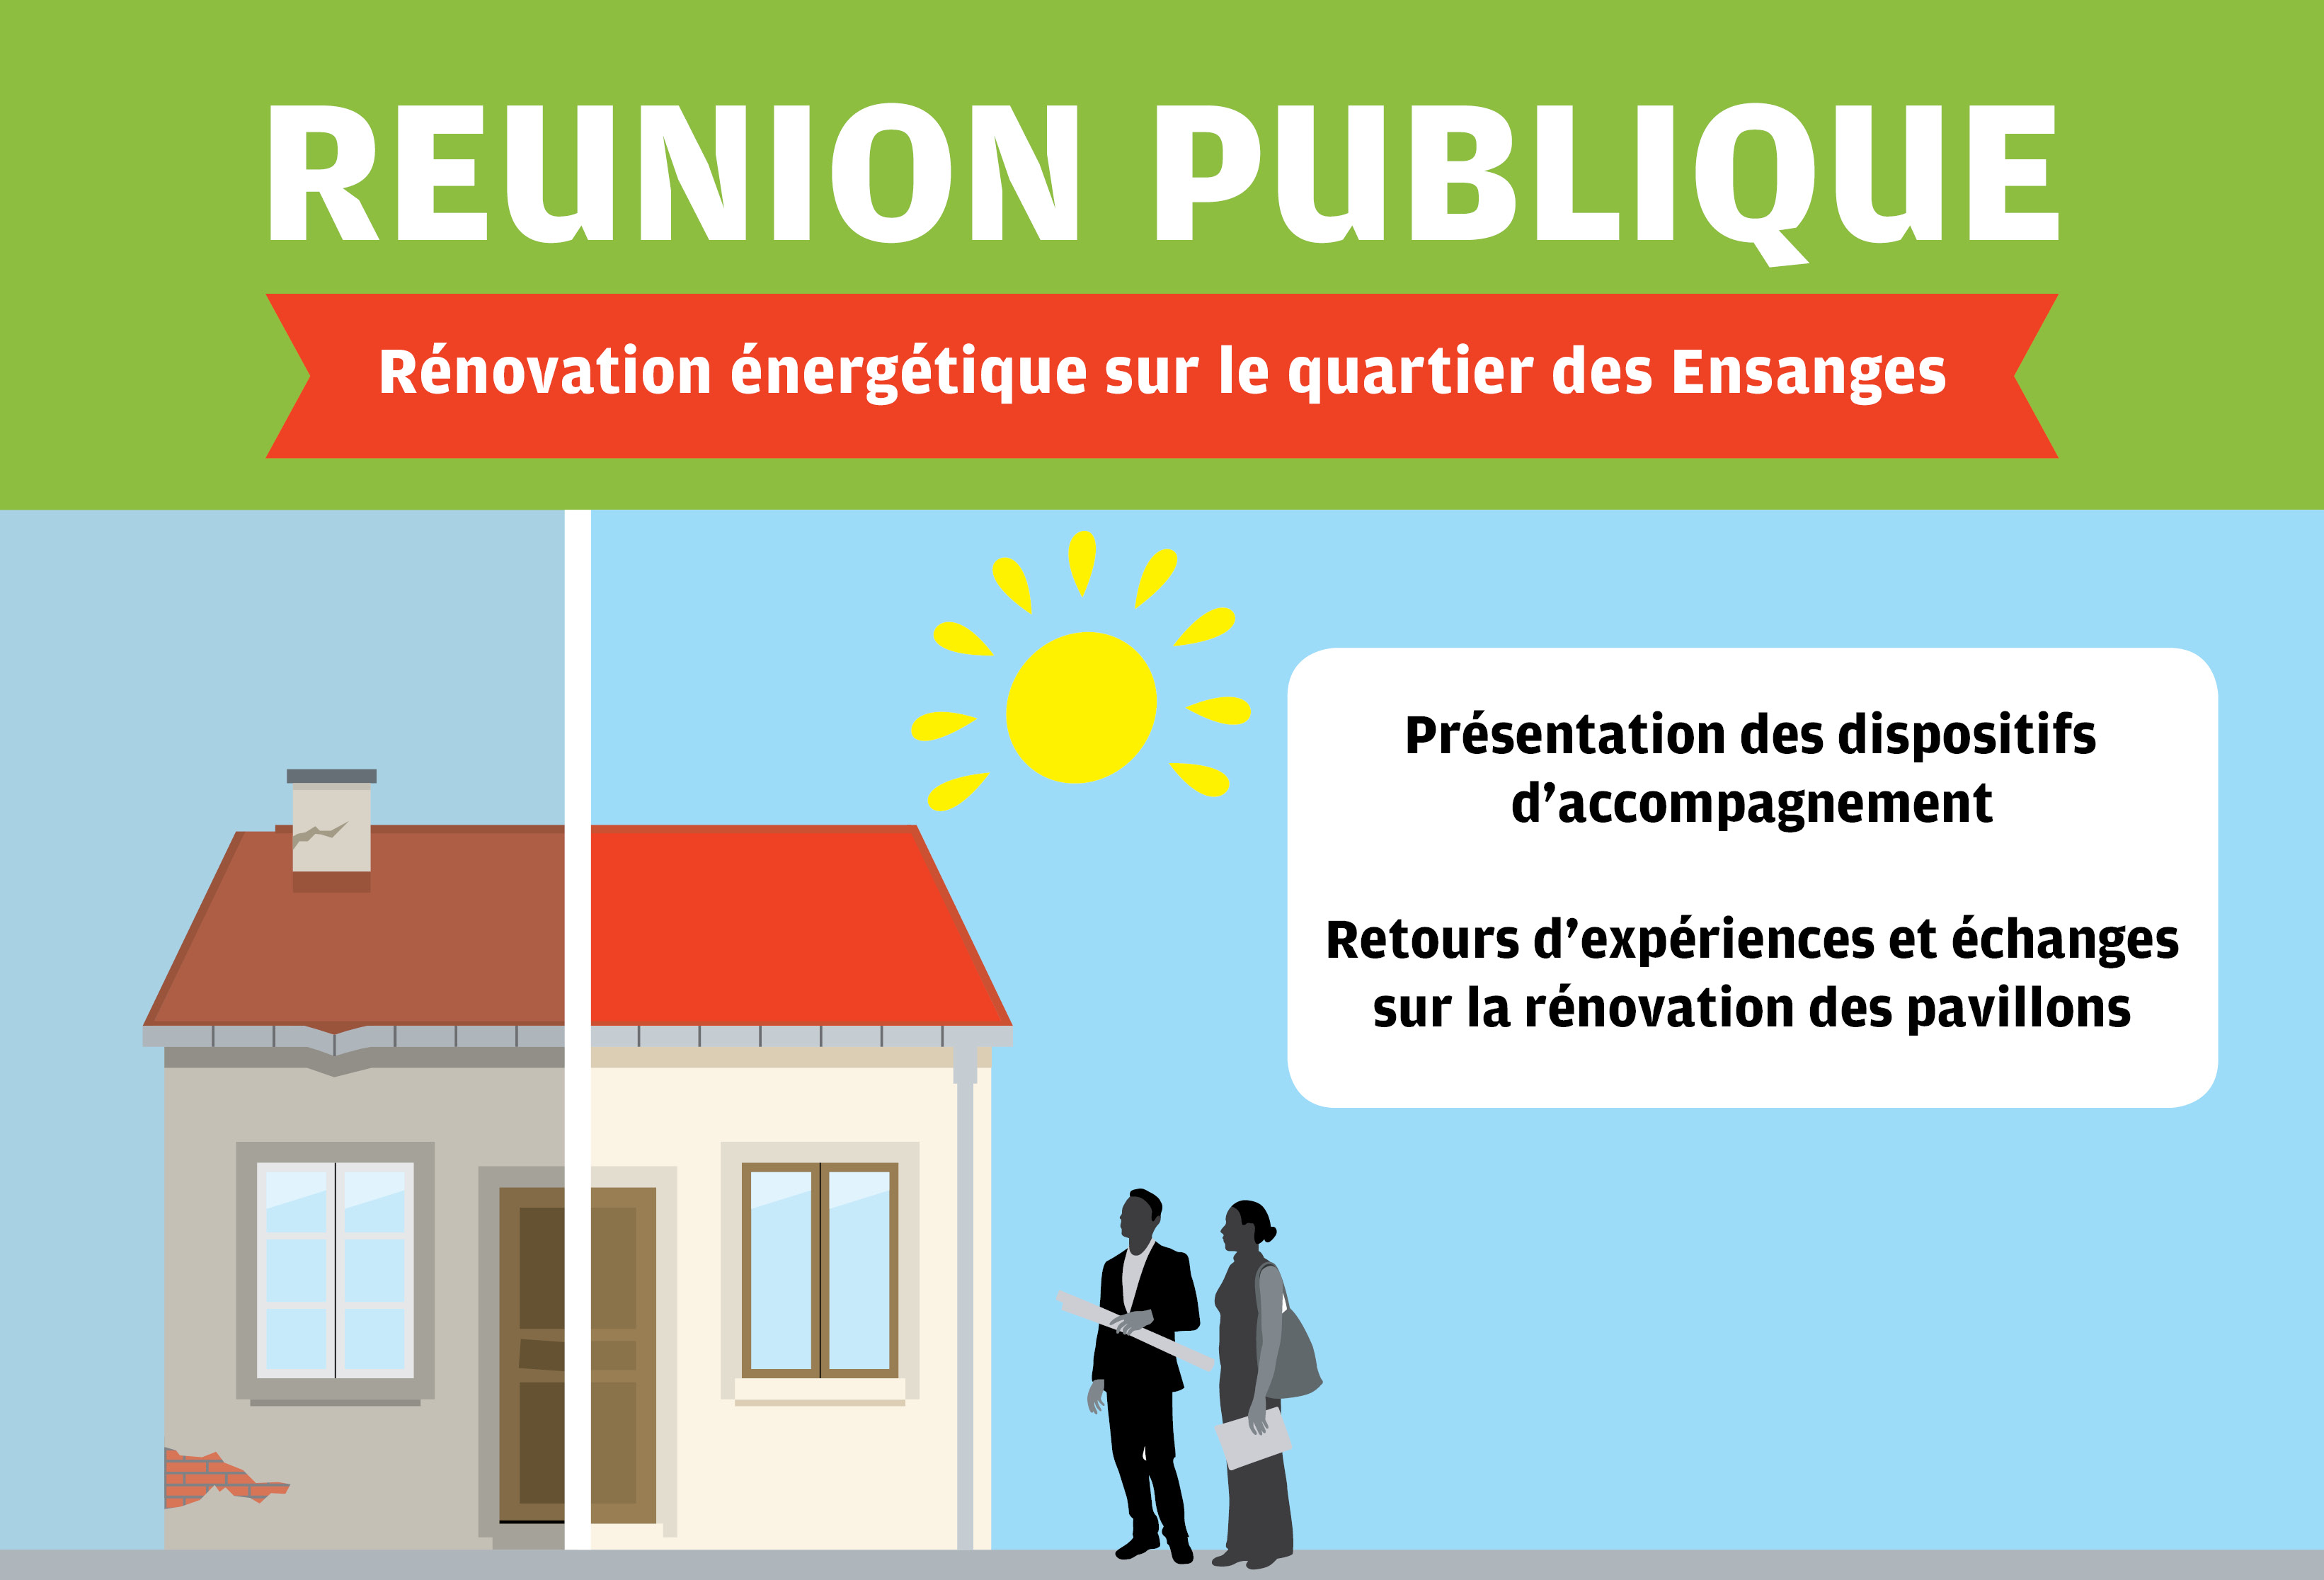 Réunion publique “rénovation énergétique sur le quartier des Ensanges” à Tomblaine